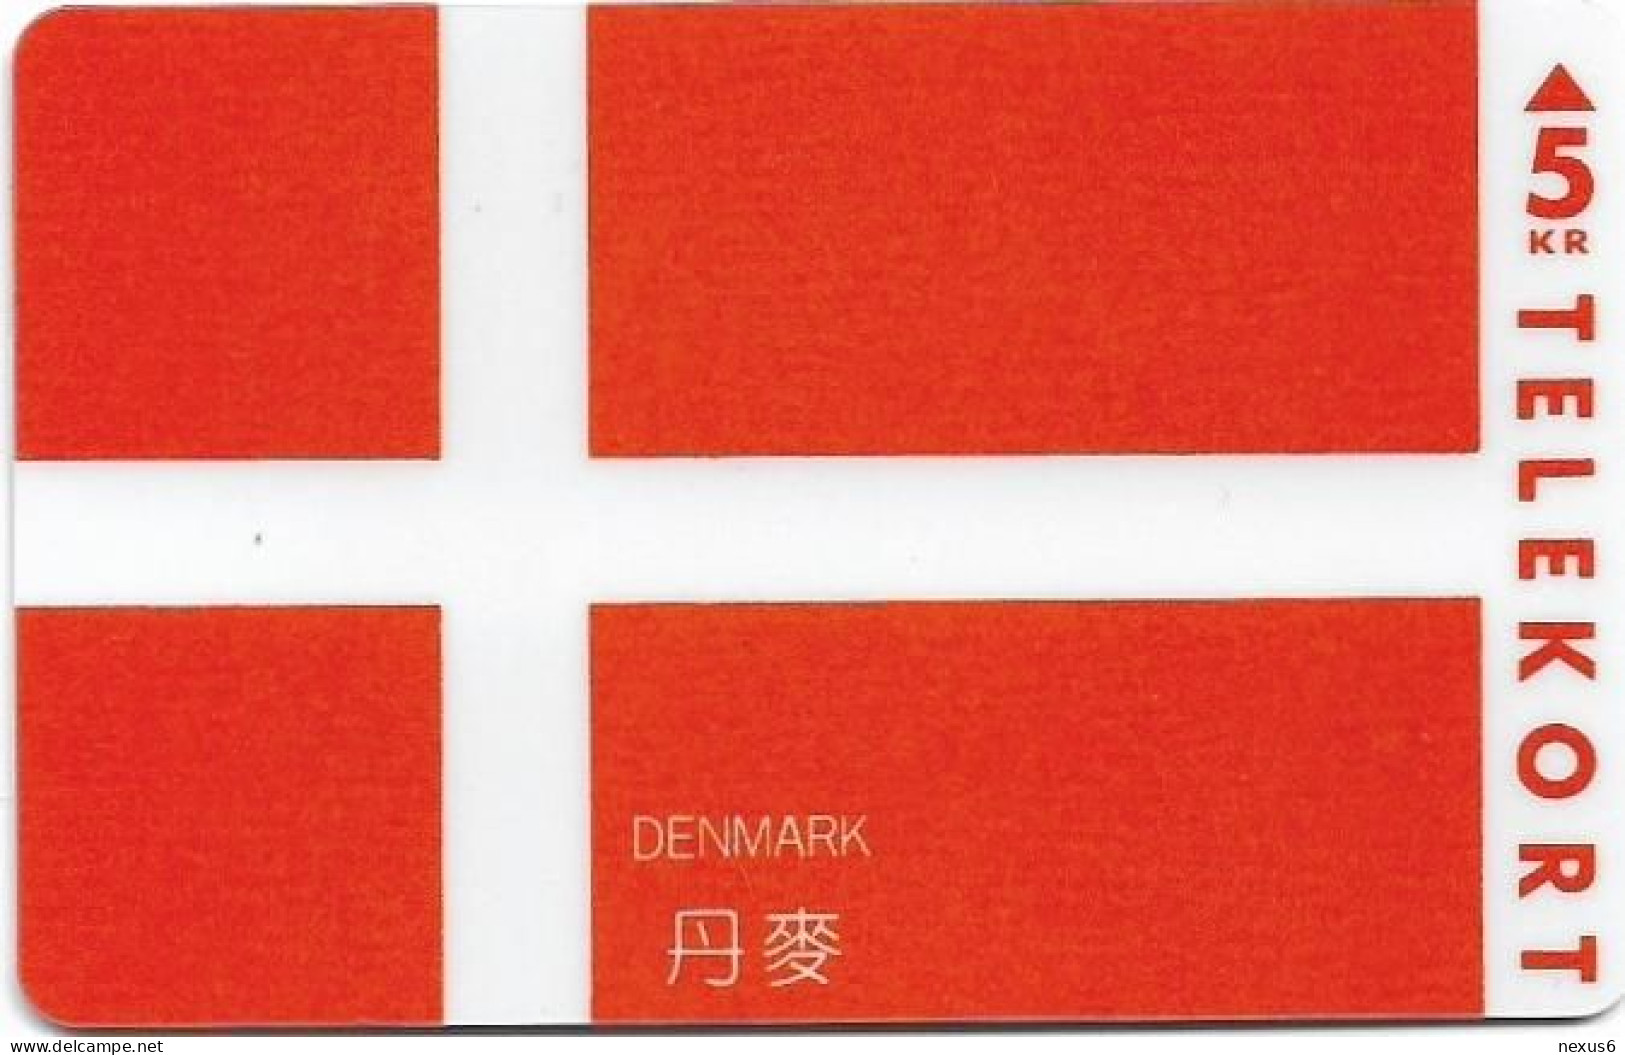 Denmark - KTAS - Flags - Denmark - TDKP155 - 06.1995, 5kr, 1.500ex, Used - Denmark